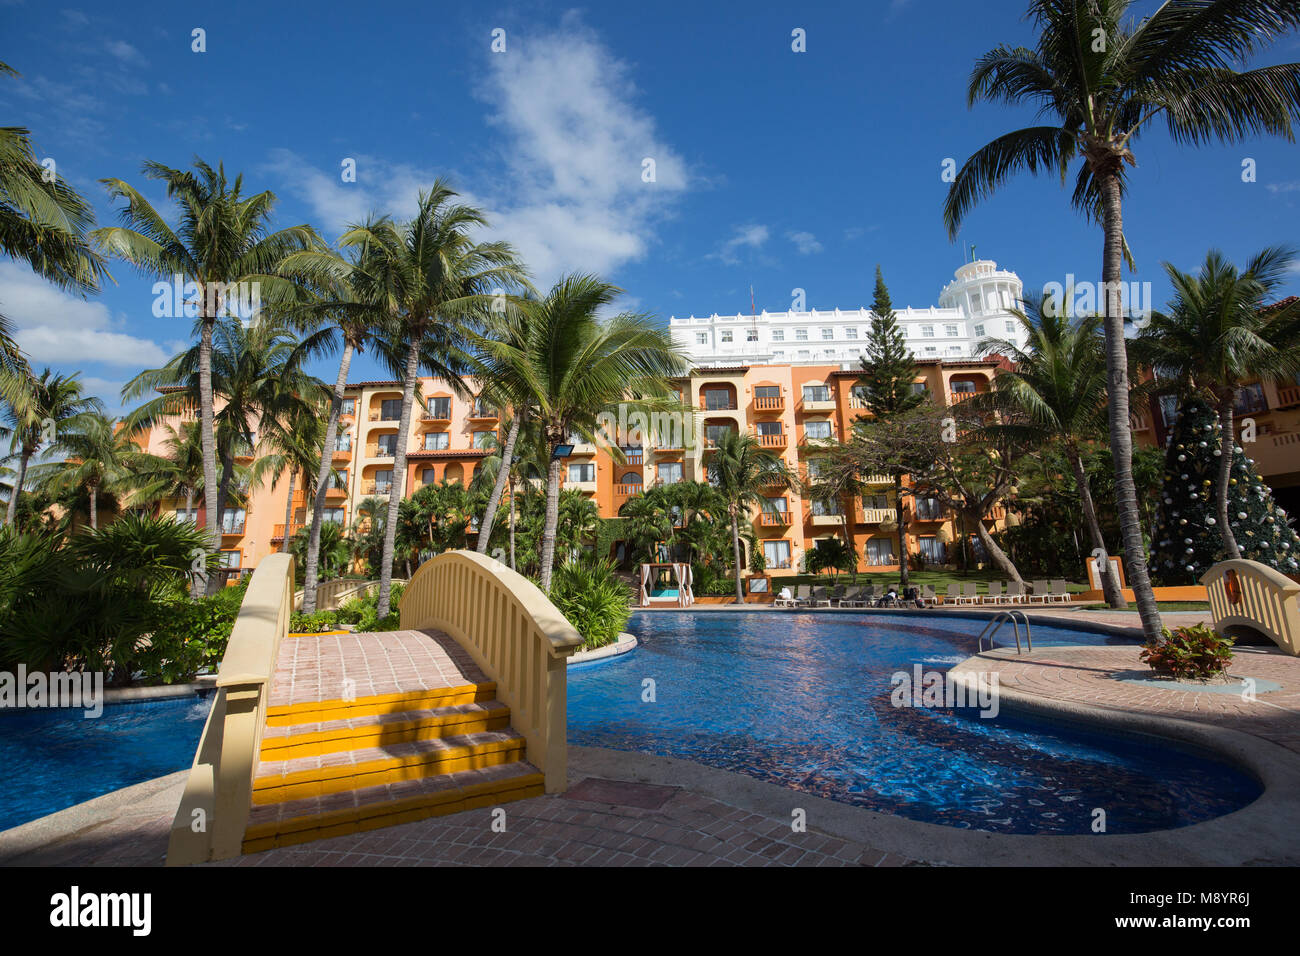 Fiesta Americana Villas Cancun il 6 gennaio 2018: Hotel vista del Fiesta Americana in Messico Foto Stock